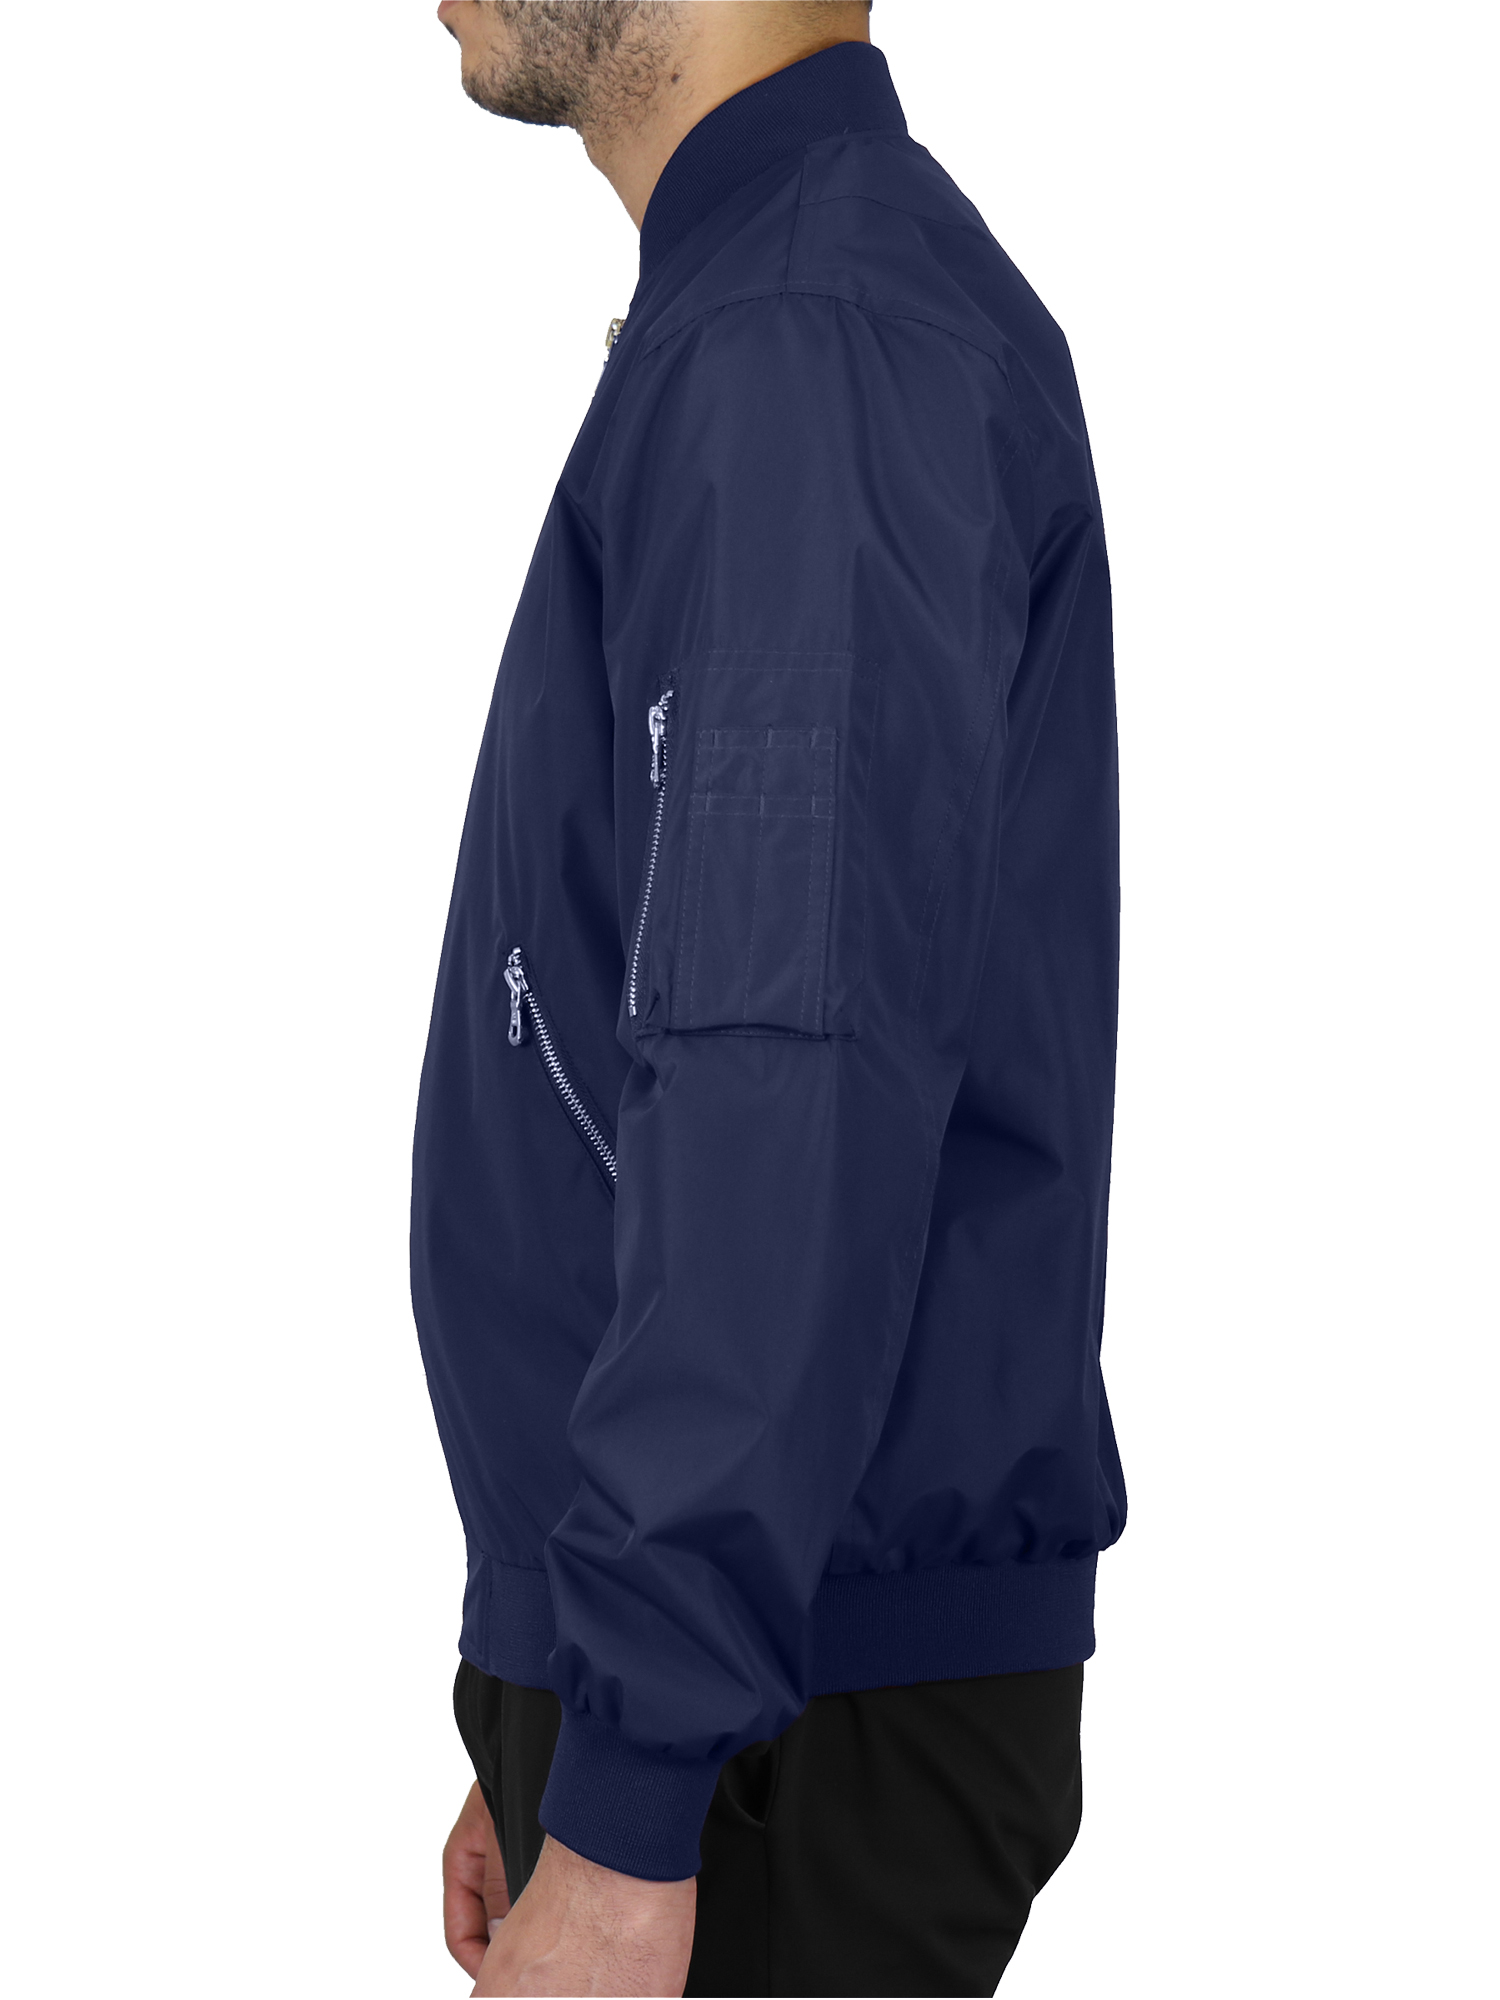 Men's Lightweight Full-Zip Windbreaker Jacket - image 2 of 5